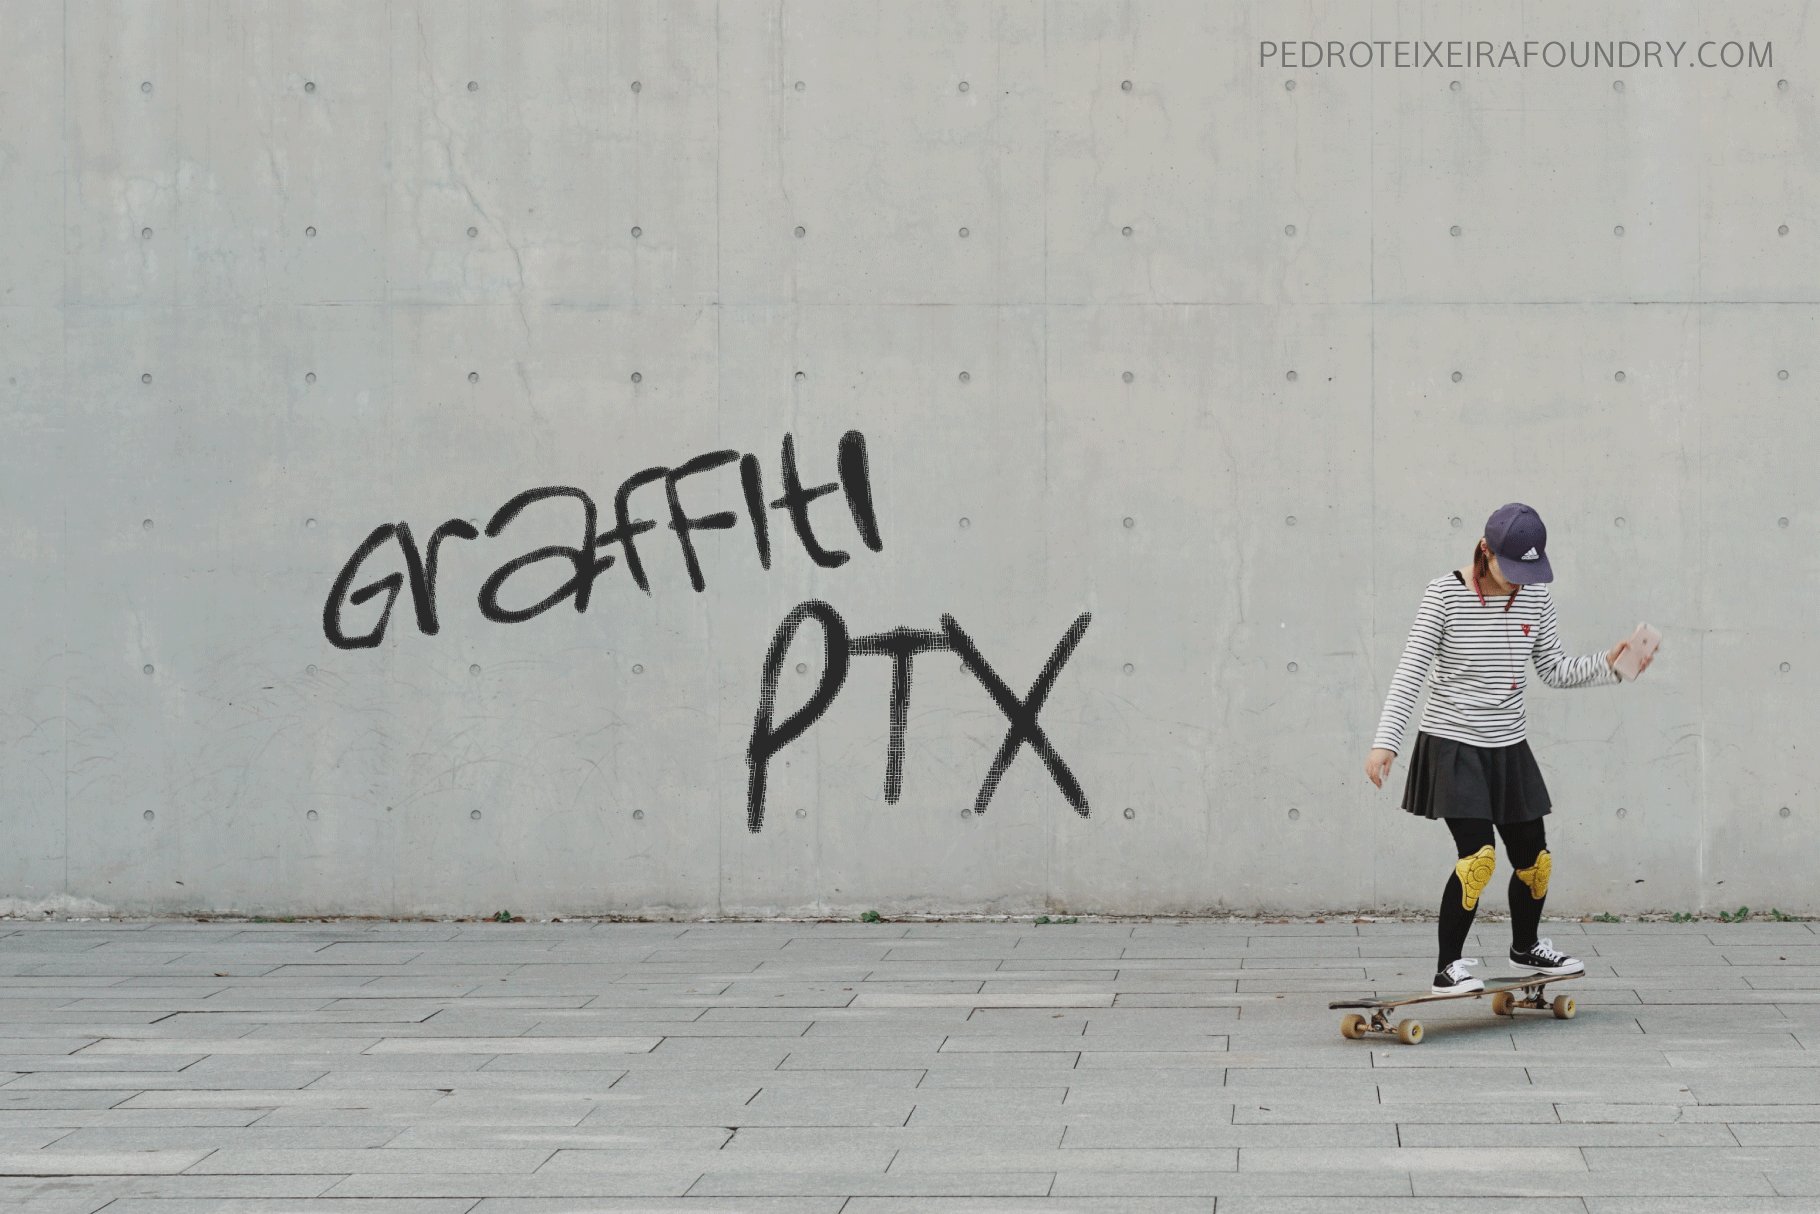 Graffiti PTxcover image.